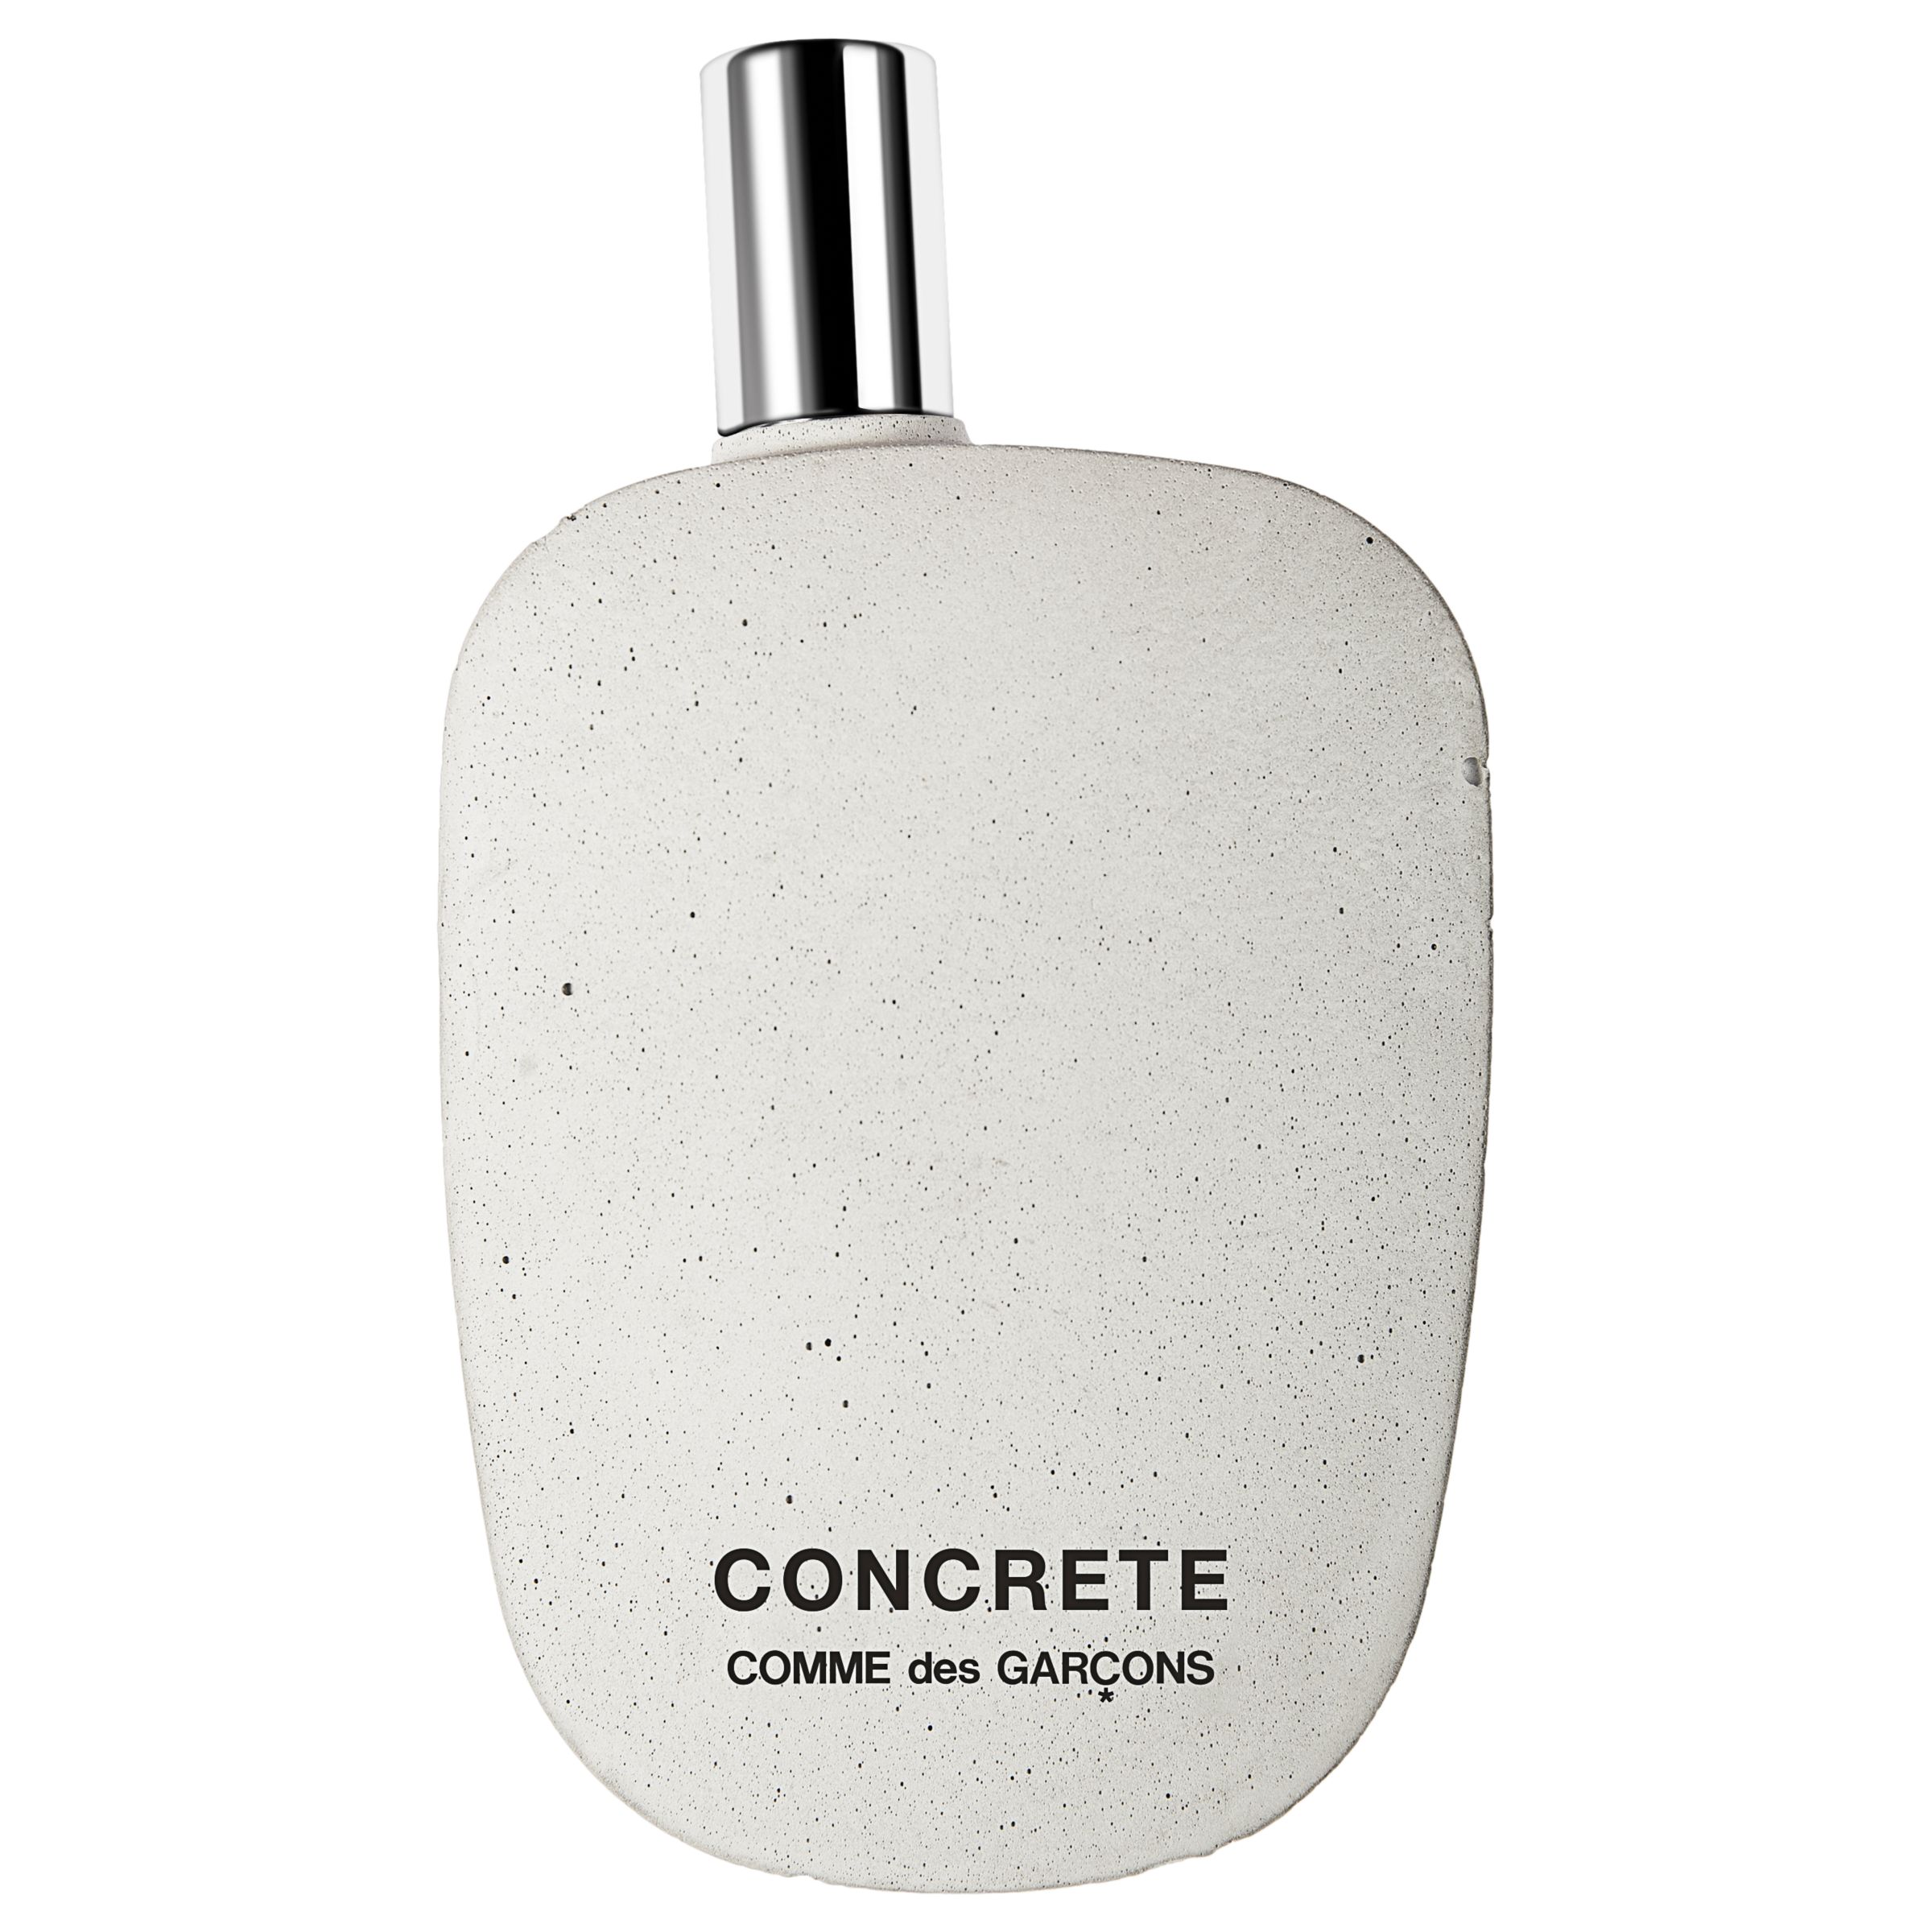 Comme des Garçons Concrete Eau de Parfum, 80ml at John Lewis & Partners